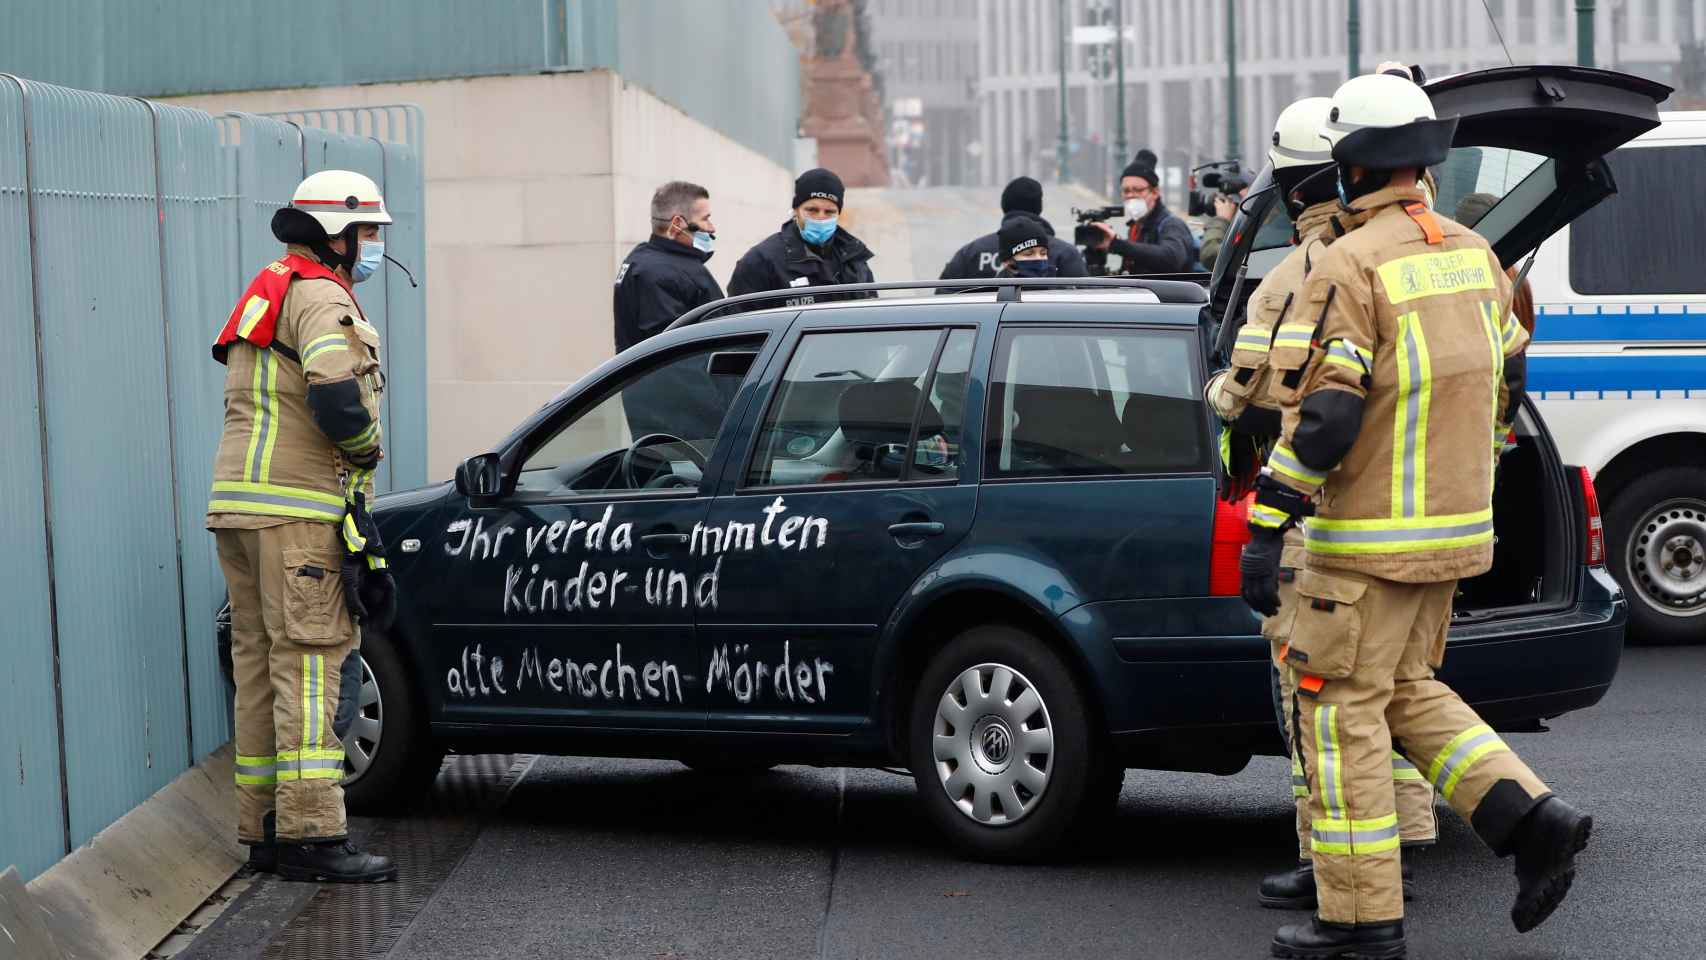 El coche que se ha estrellado contra la Cancillería de Alemania, con un mensaje antiglobalización.